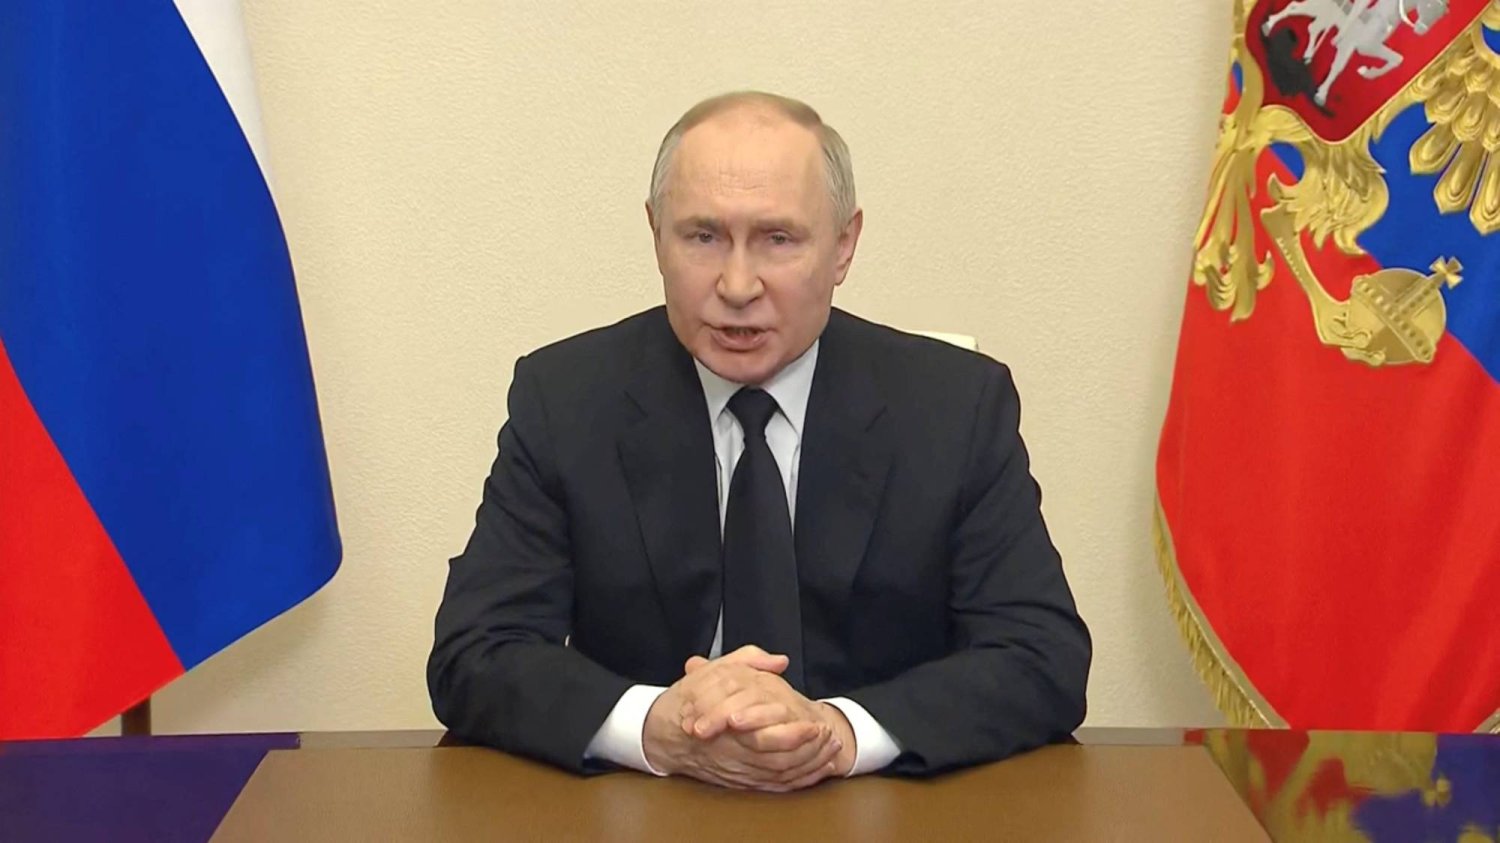 بوتين يتوعّد بمحاسبة جميع المسؤولين عن «هجوم موسكو»